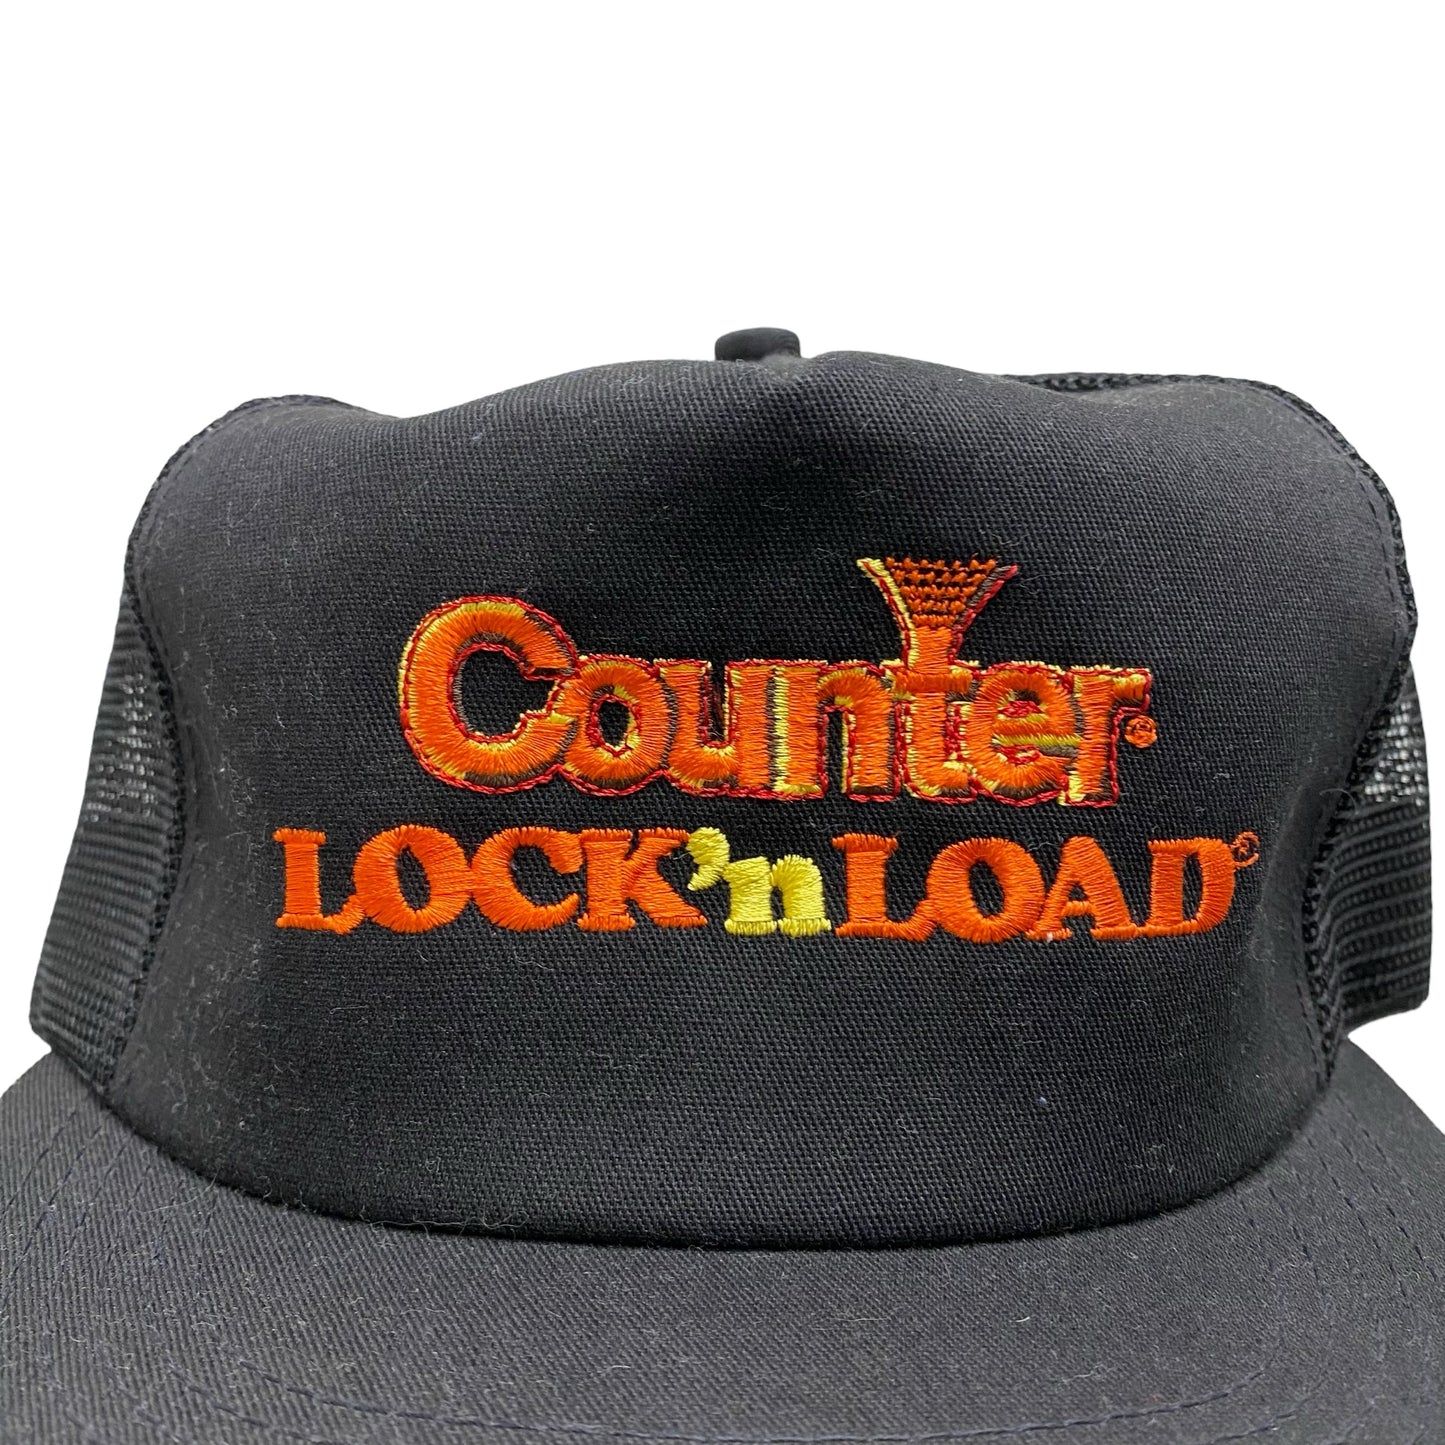 Vintage Counter Lock'n Load Black Trucker Snap Back Hat